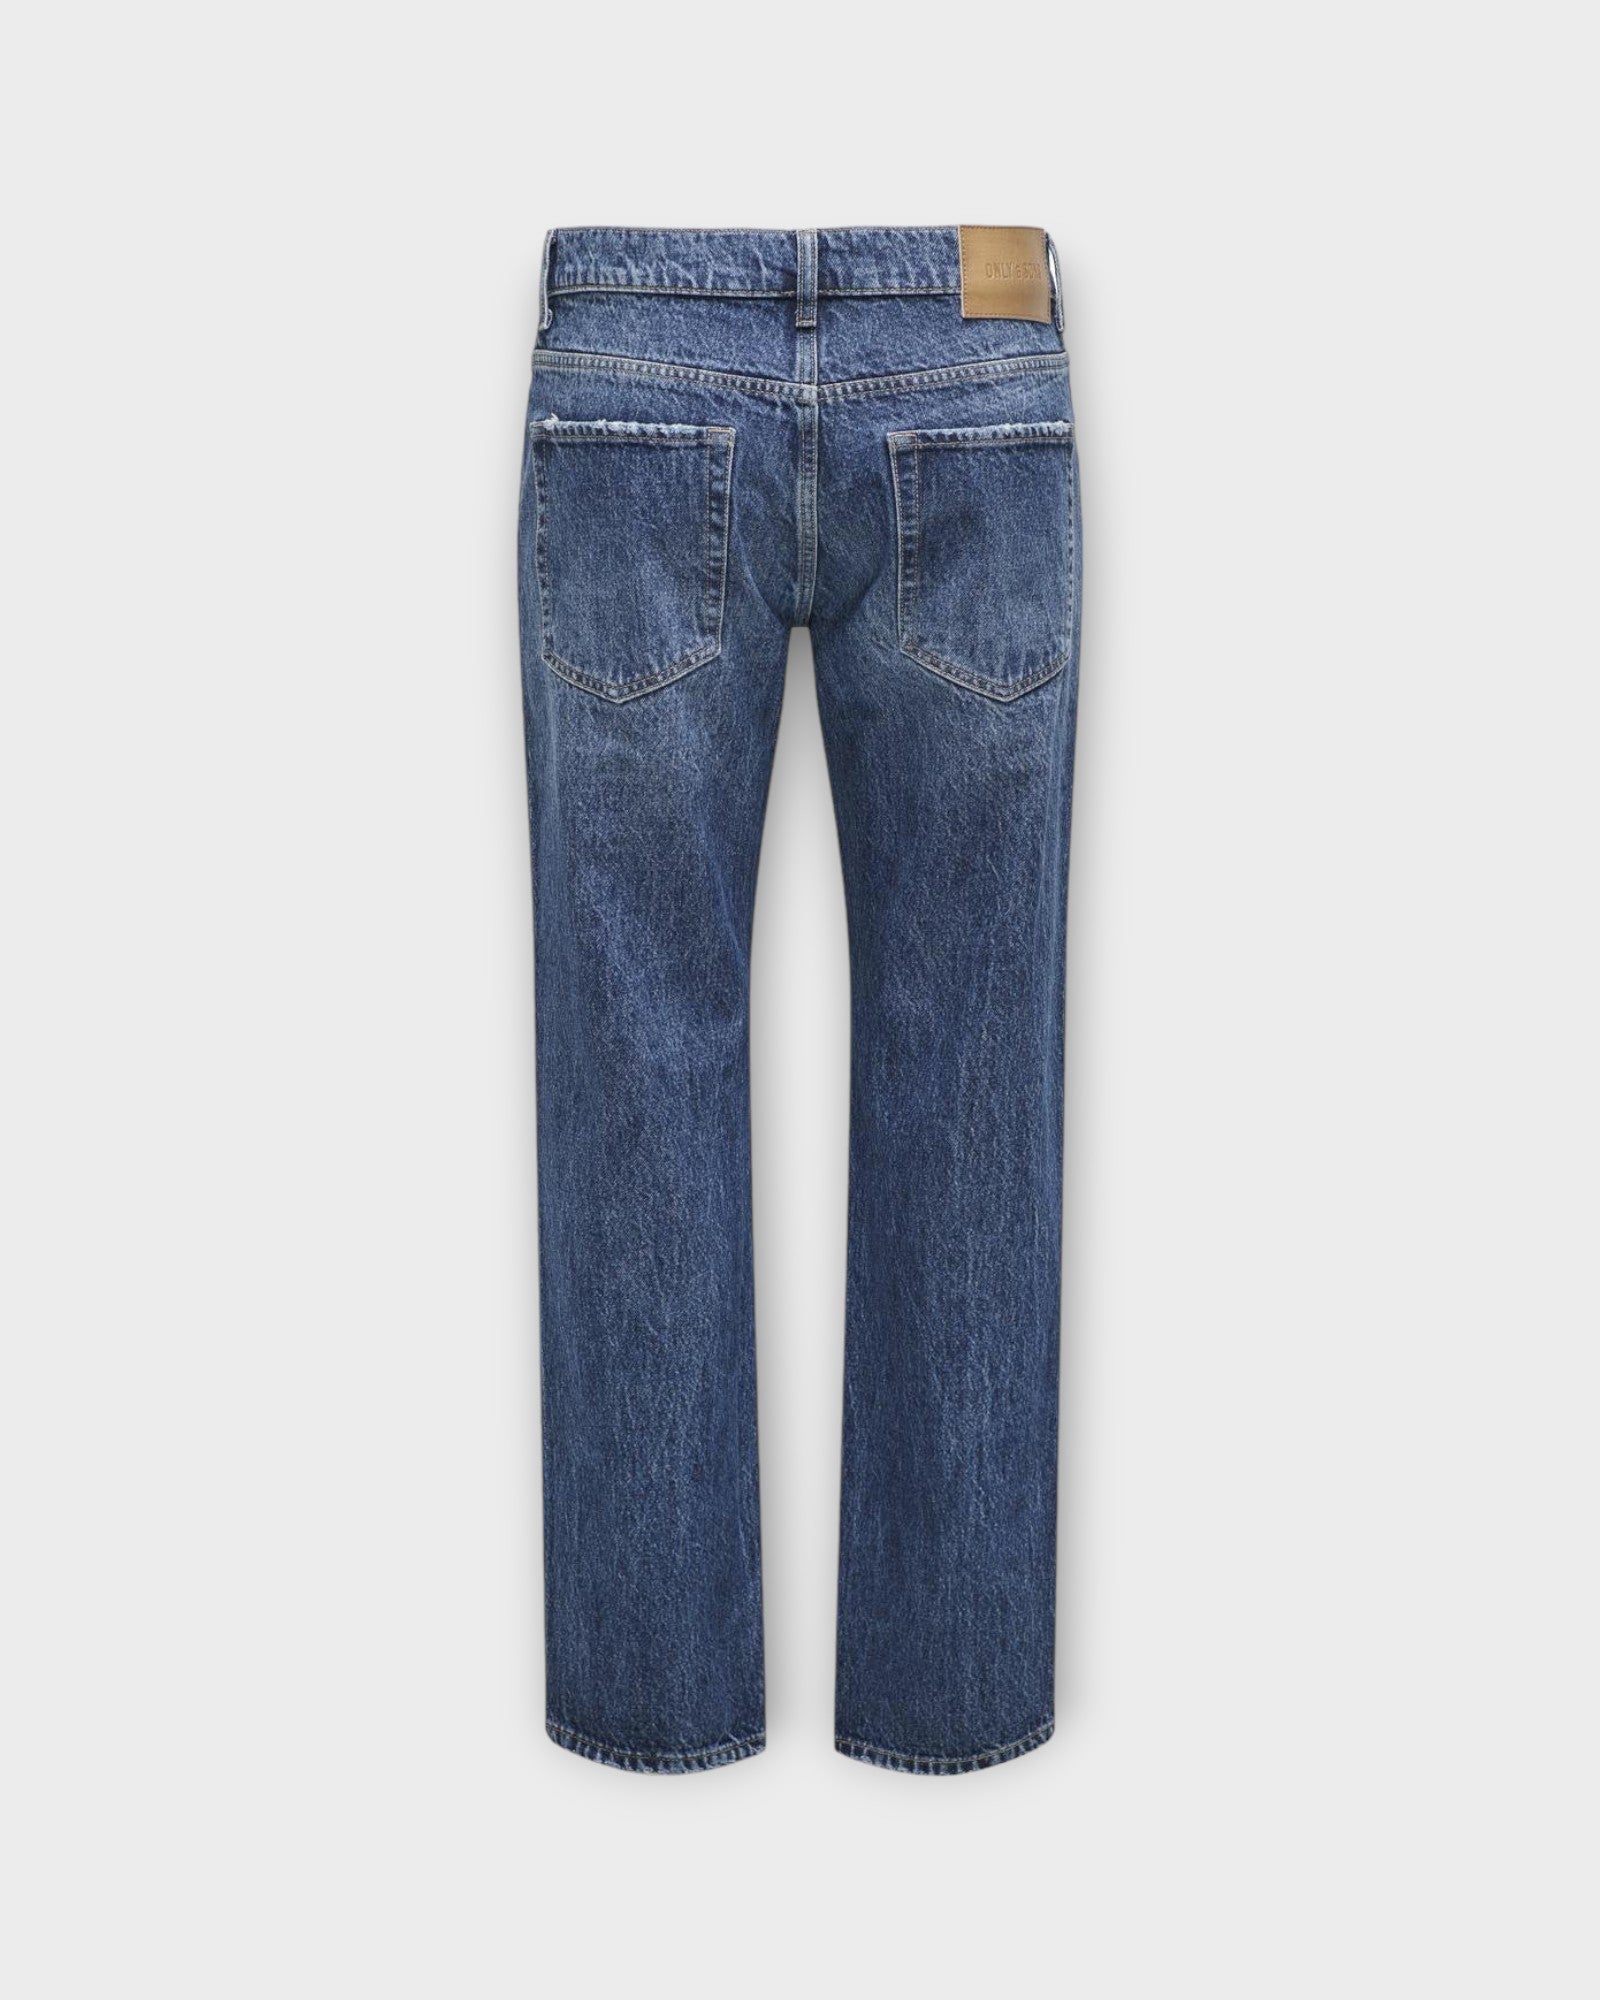  Edge Straight 9392 Dark Blue Denim fra Only and Sons. Baggy jeans til mænd. Her set bagfra.